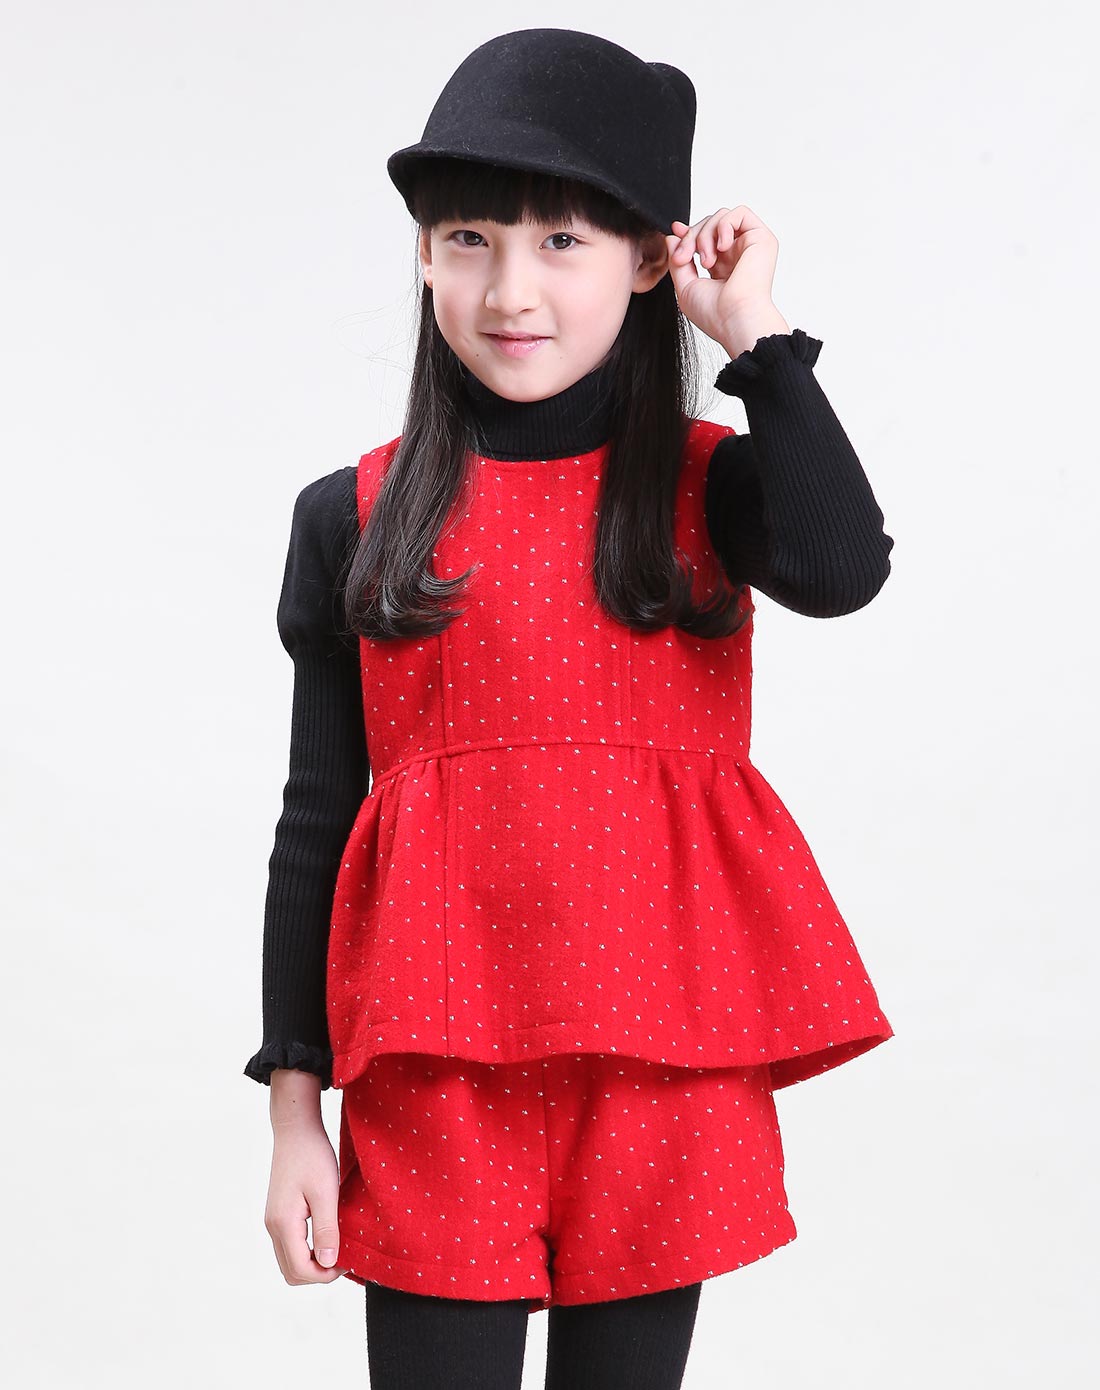 笛莎deesha女童套装搭配专场女童红色套装141753602